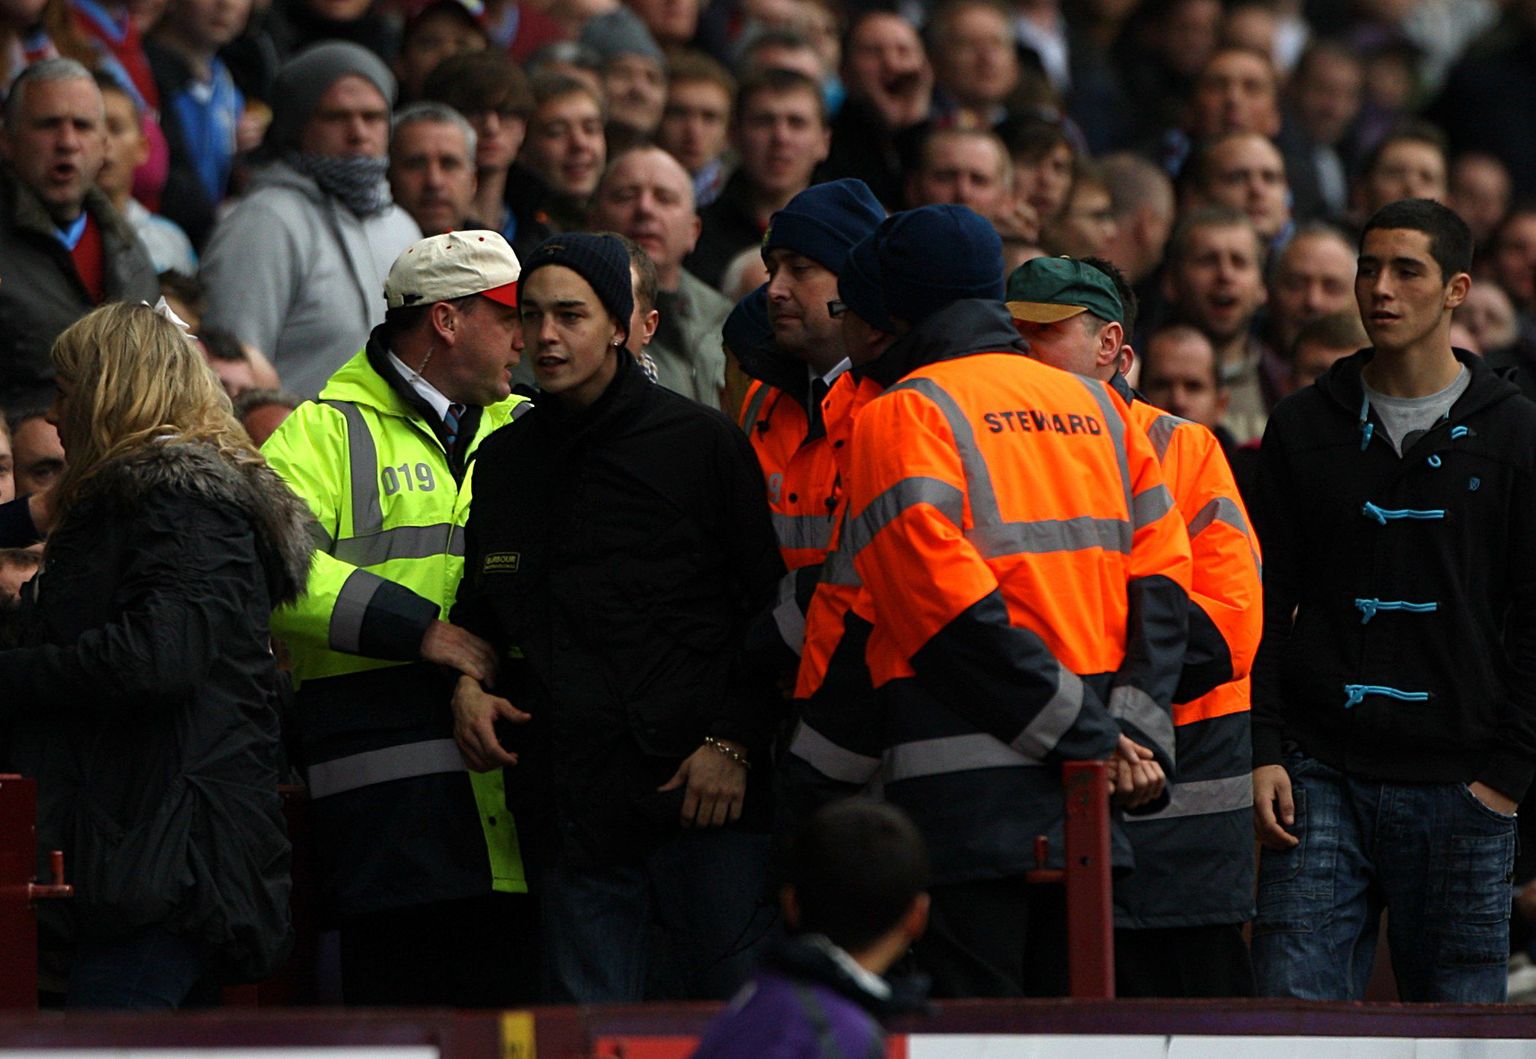 Turvamehed võtsid palli väljakule visanud noore Aston Villa poolehoidja Kieran Comerfordi (keskel mustas) kinni ja eemaldasid ta staadionilt.